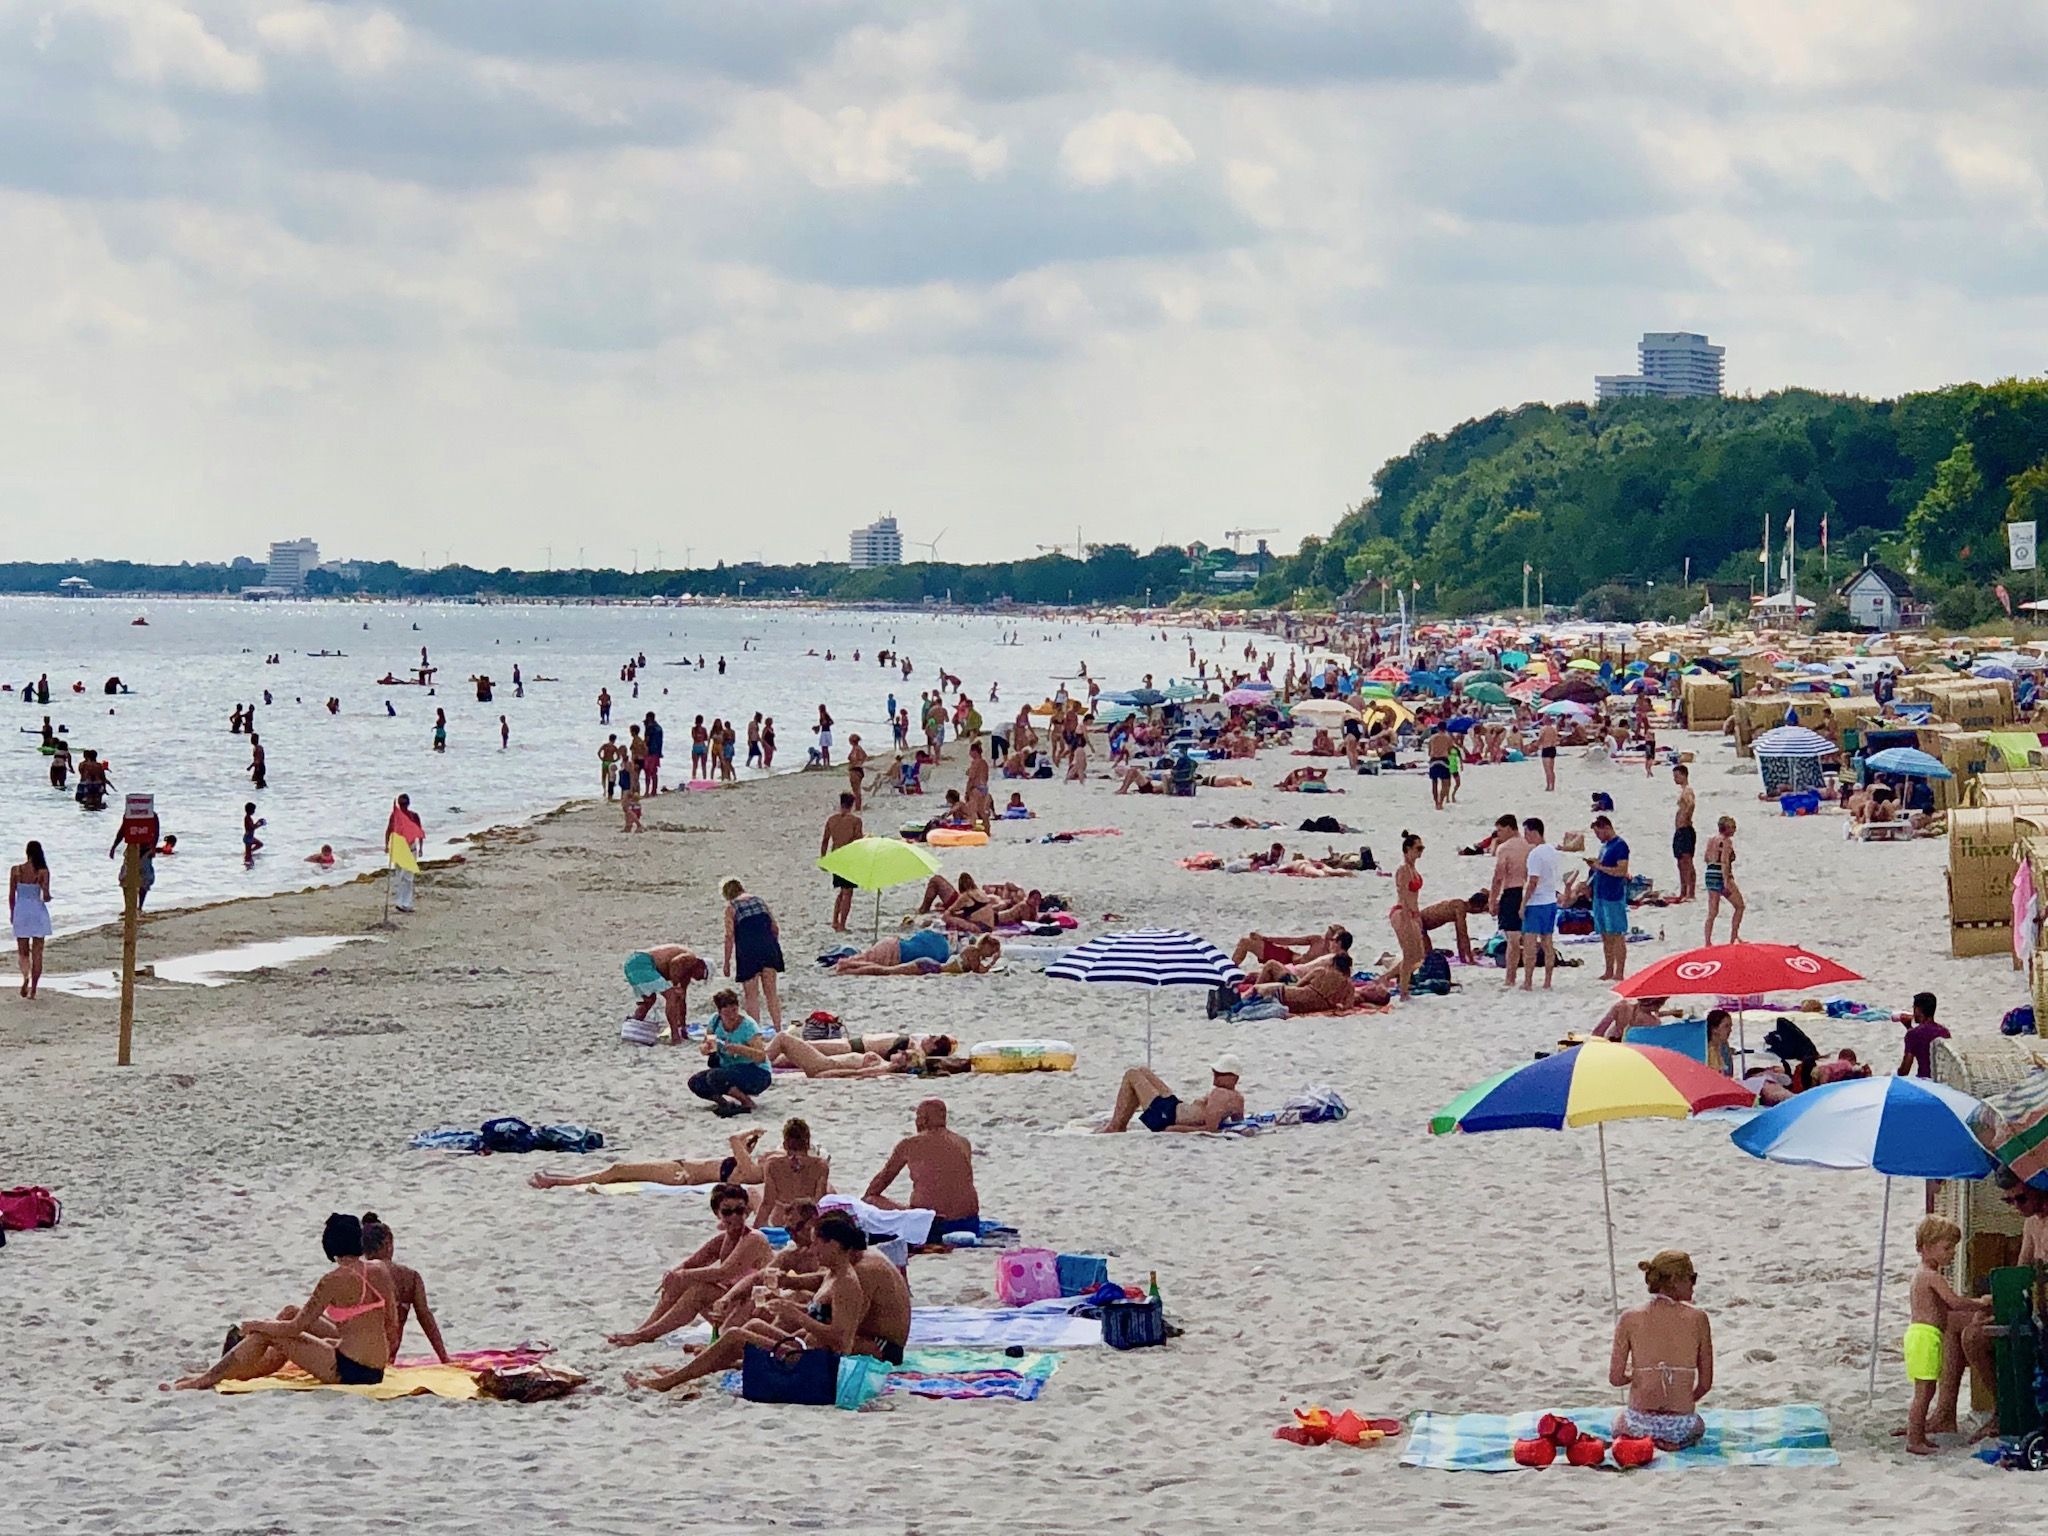 Het strand in Scharbeutz in de zomer: op sommige dagen kunt u het water niet zien voor de zwemmers - zwemmen in de Baltische Zee is niet zonder gevaren. Foto: Sascha Tegtmeyer